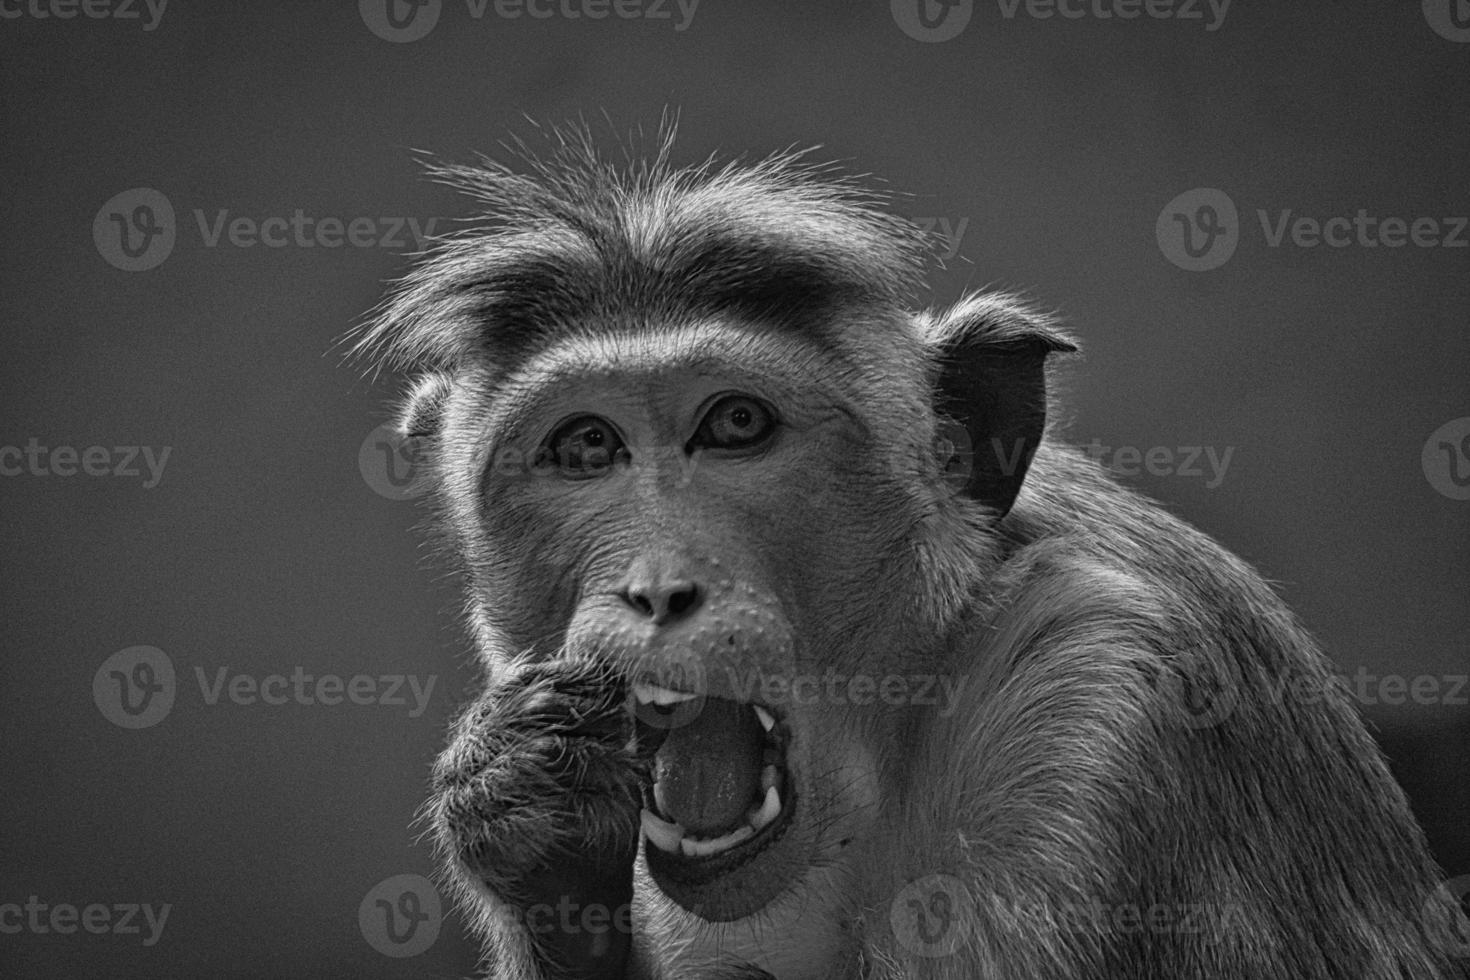 singe rhésus en noir et blanc, assis sur une branche et faisant pipi dans ses dents. photo animalière d'un mammifère